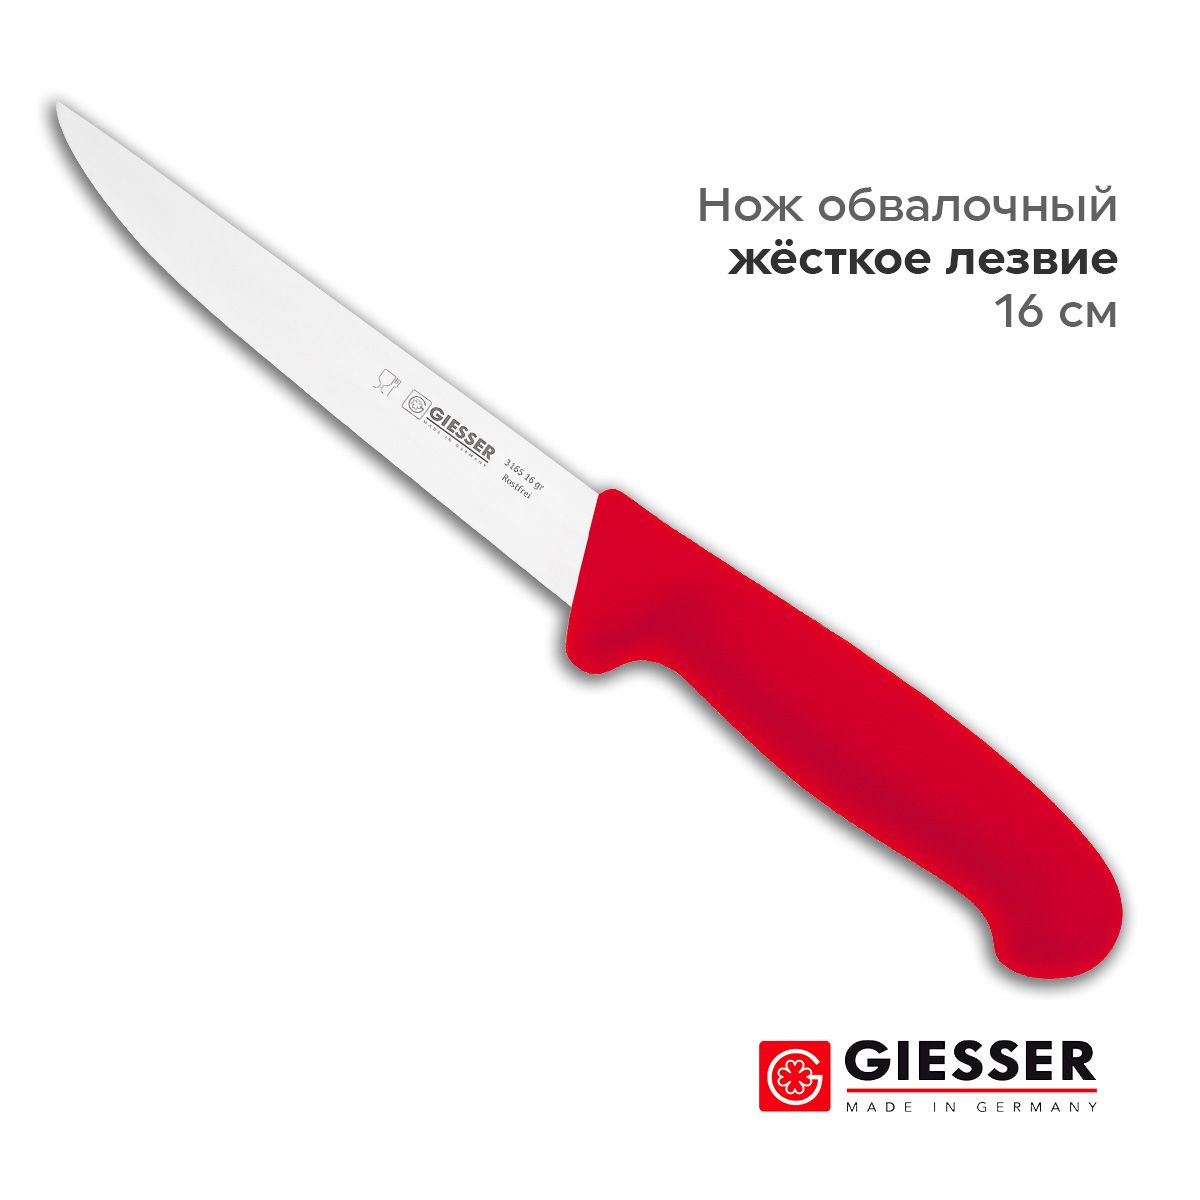 Giesser316516r-Ножразделочный,прямой,лезвие16см